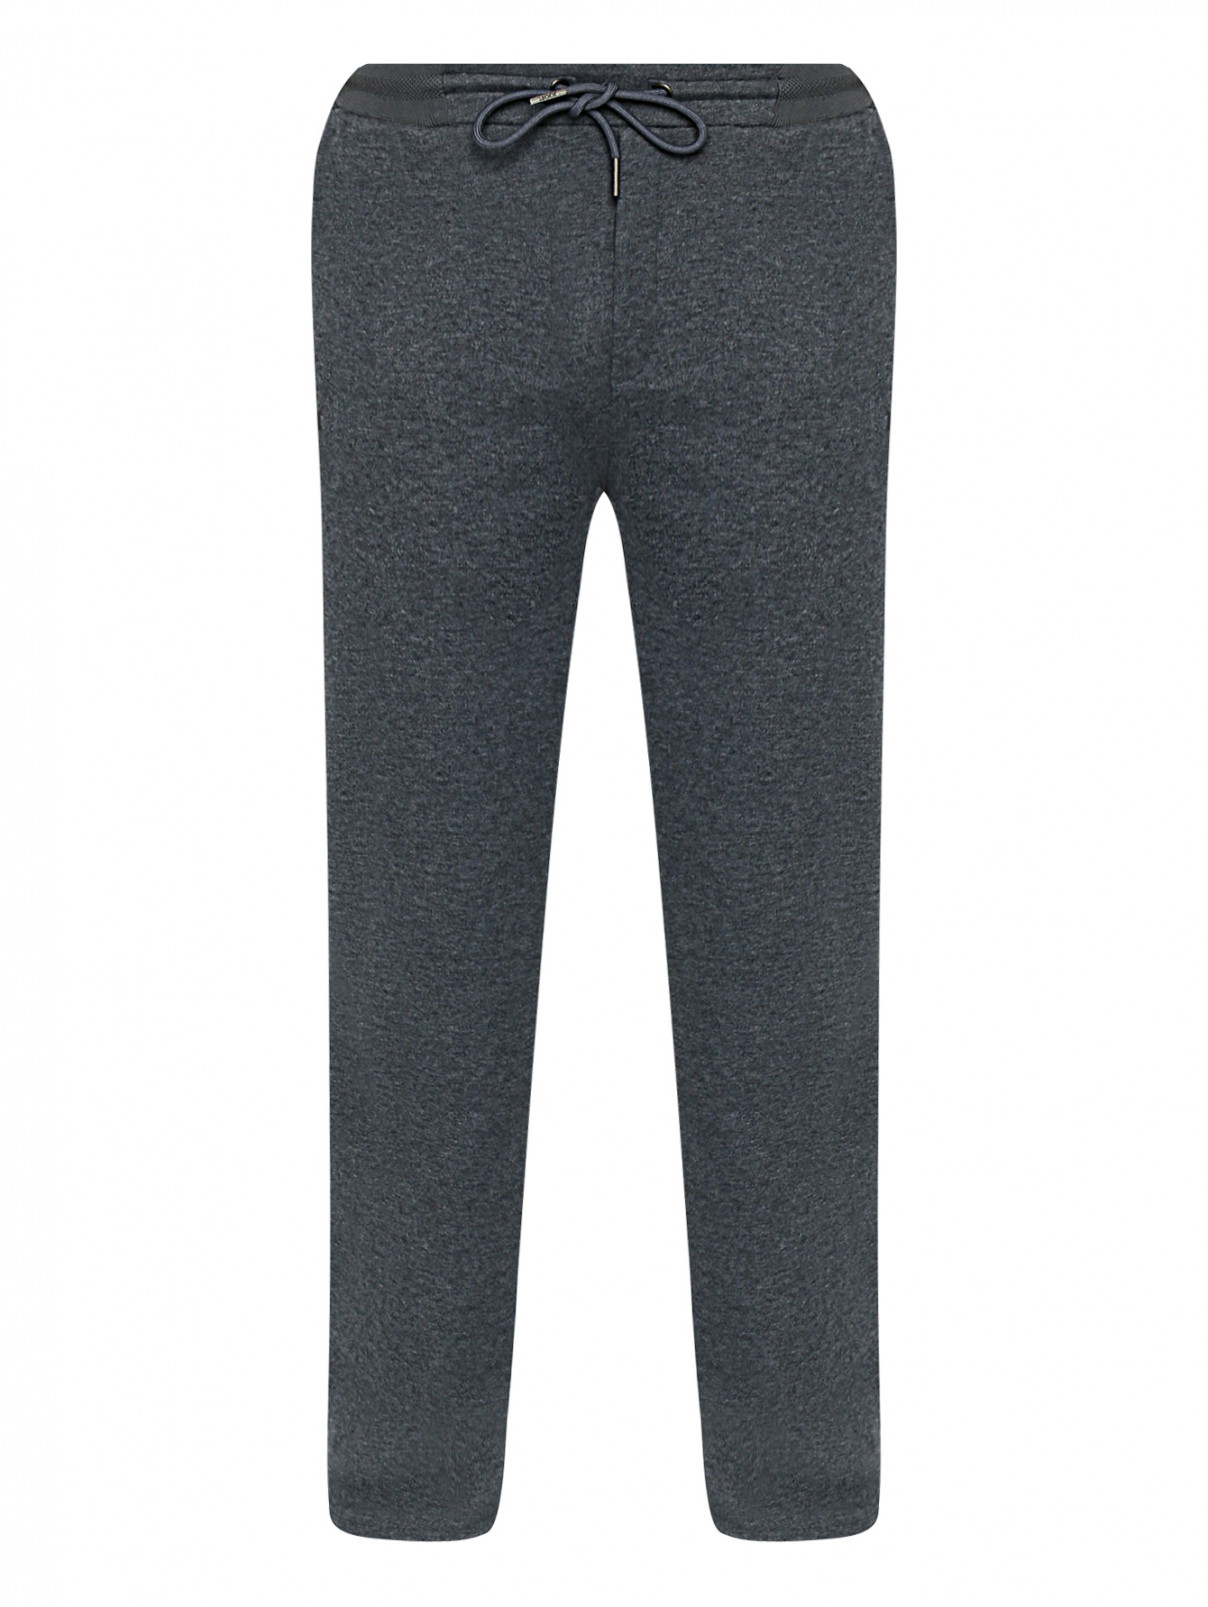 Трикотажные брюки на резинке Joop  –  Общий вид  – Цвет:  Серый